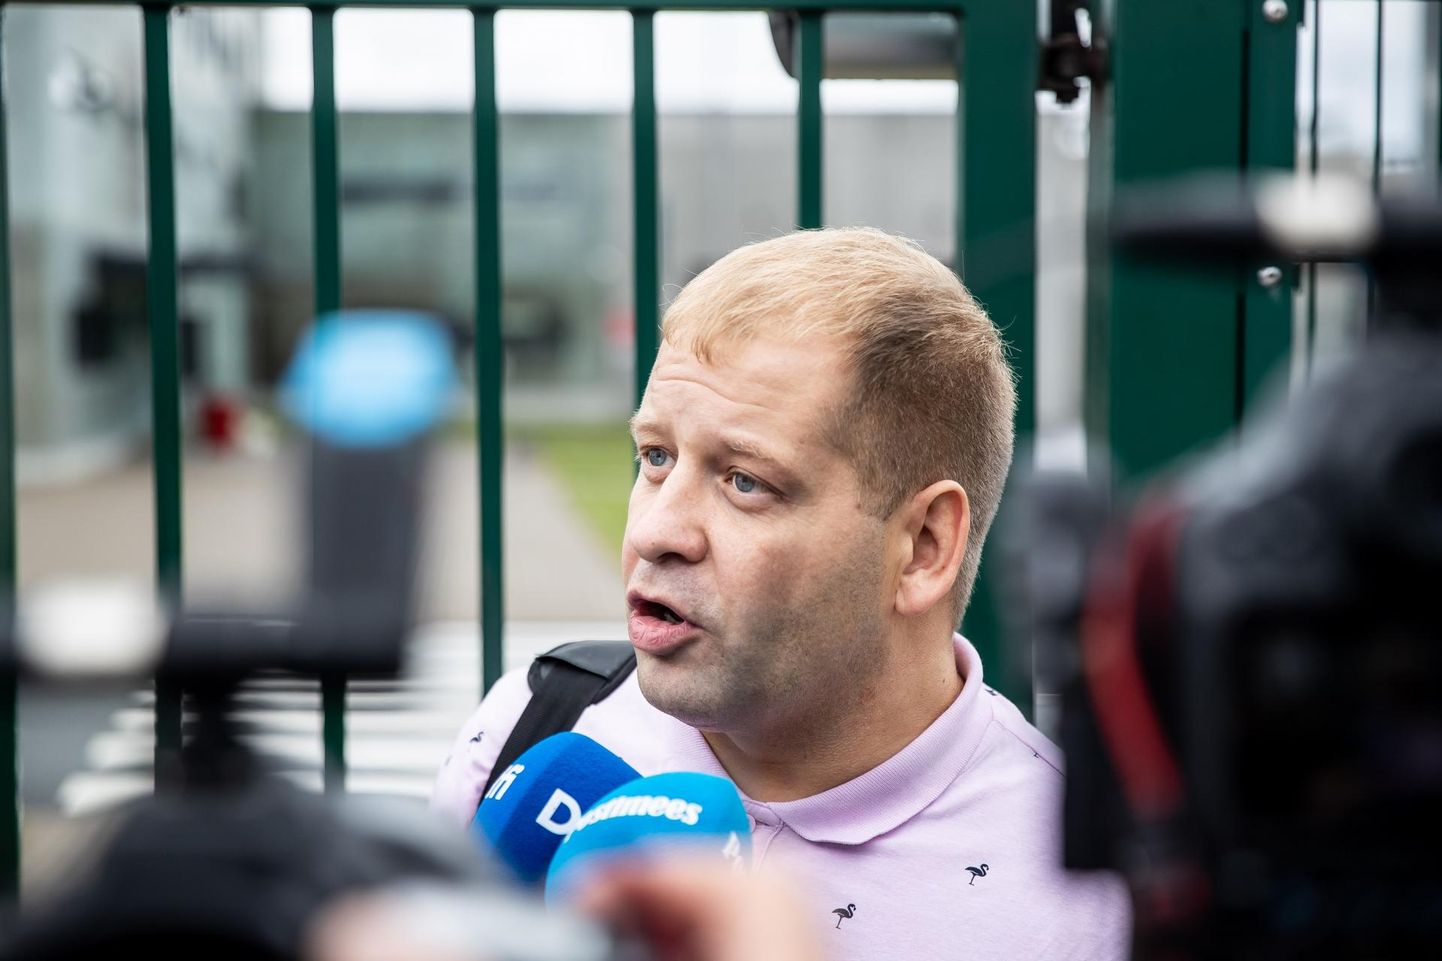 Endine Keskerakonna poliitik Tõnis Liinat vabanes Tallinna vangla eeluurimisosakonnast.